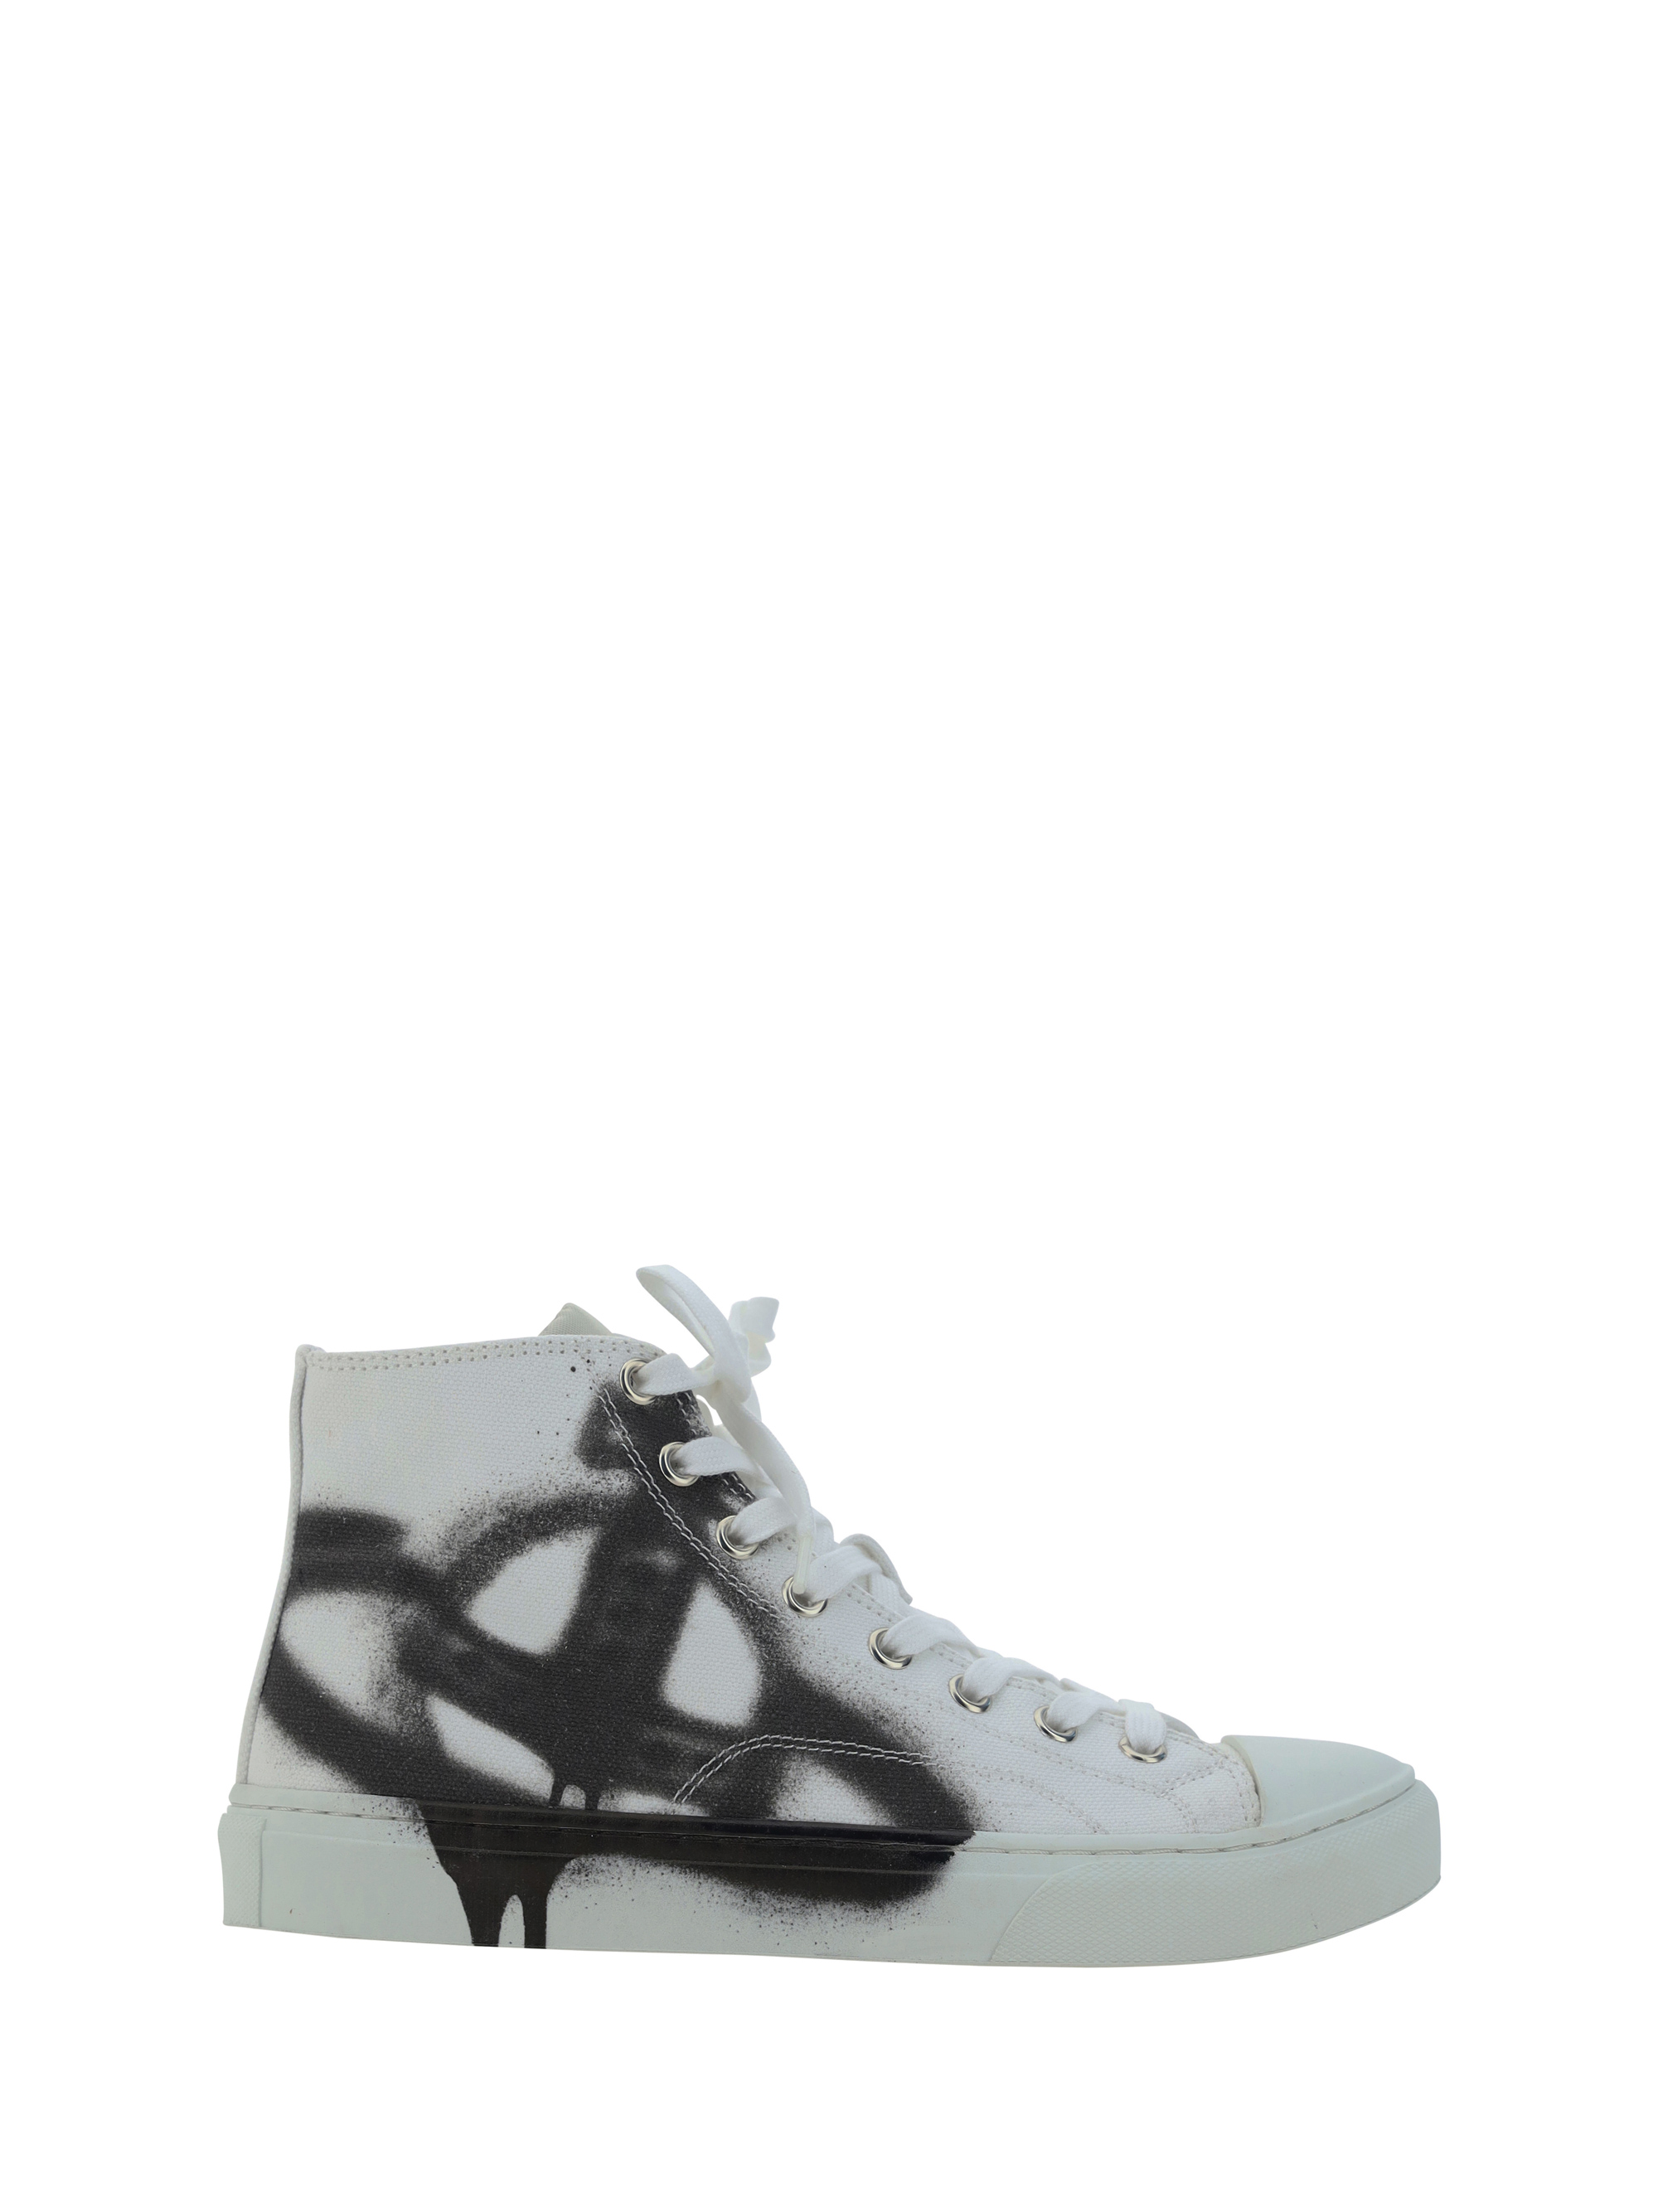 Shop Vivienne Westwood Plimsoll Sneakers In White/black Orb